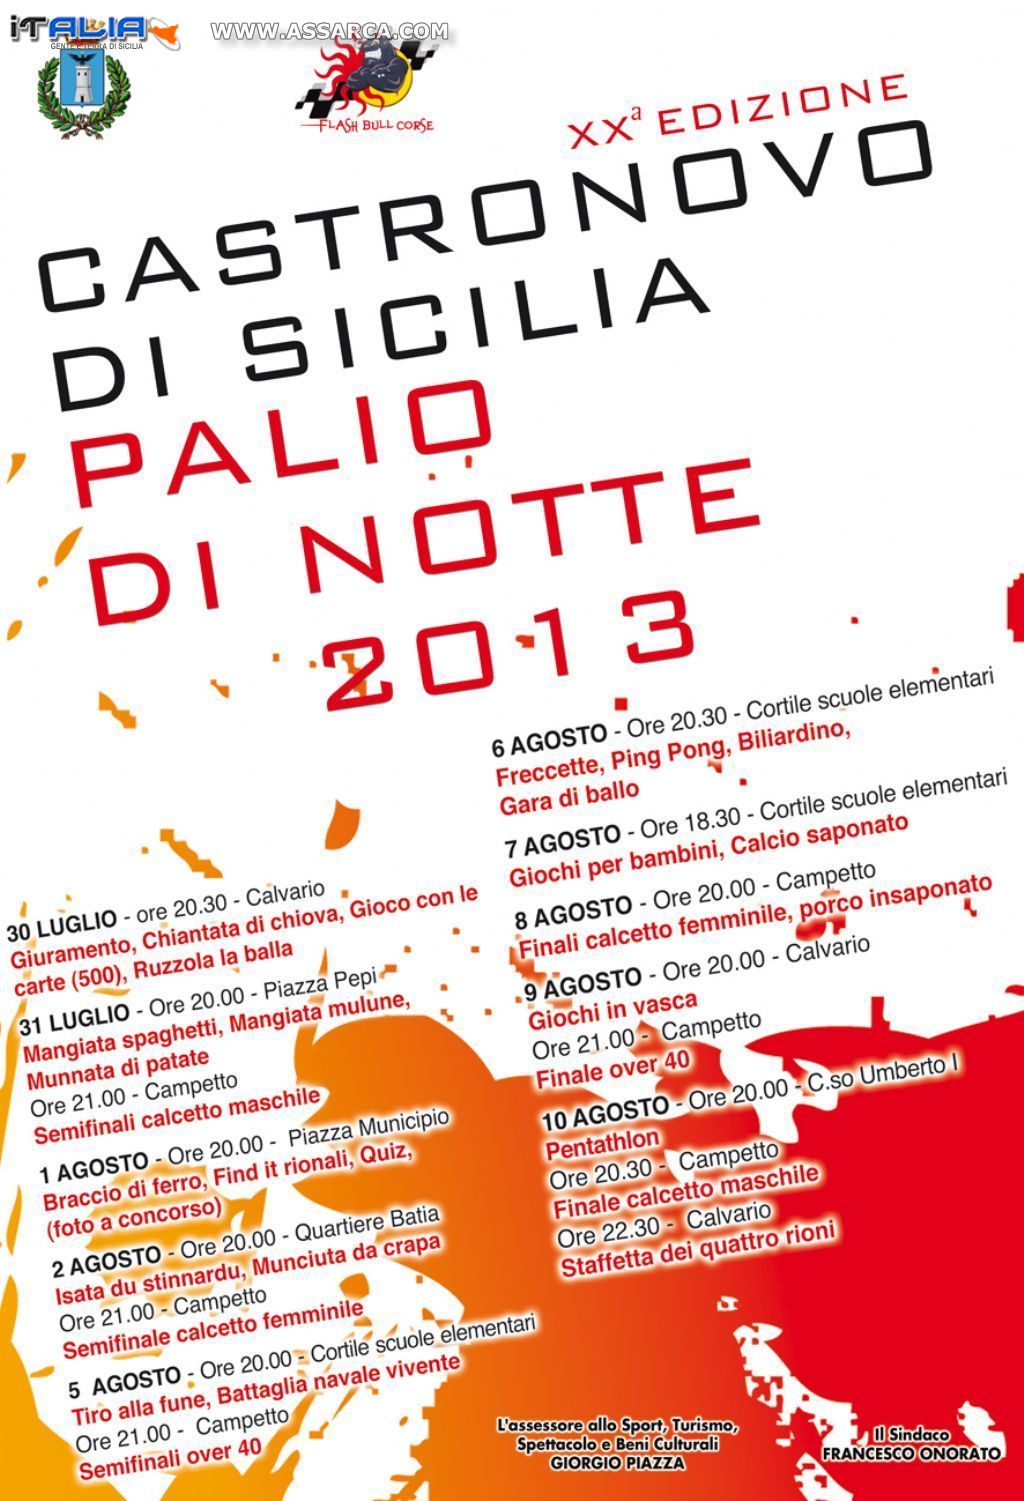 PALIO DI NOTTE 2013 - PROGRAMMA